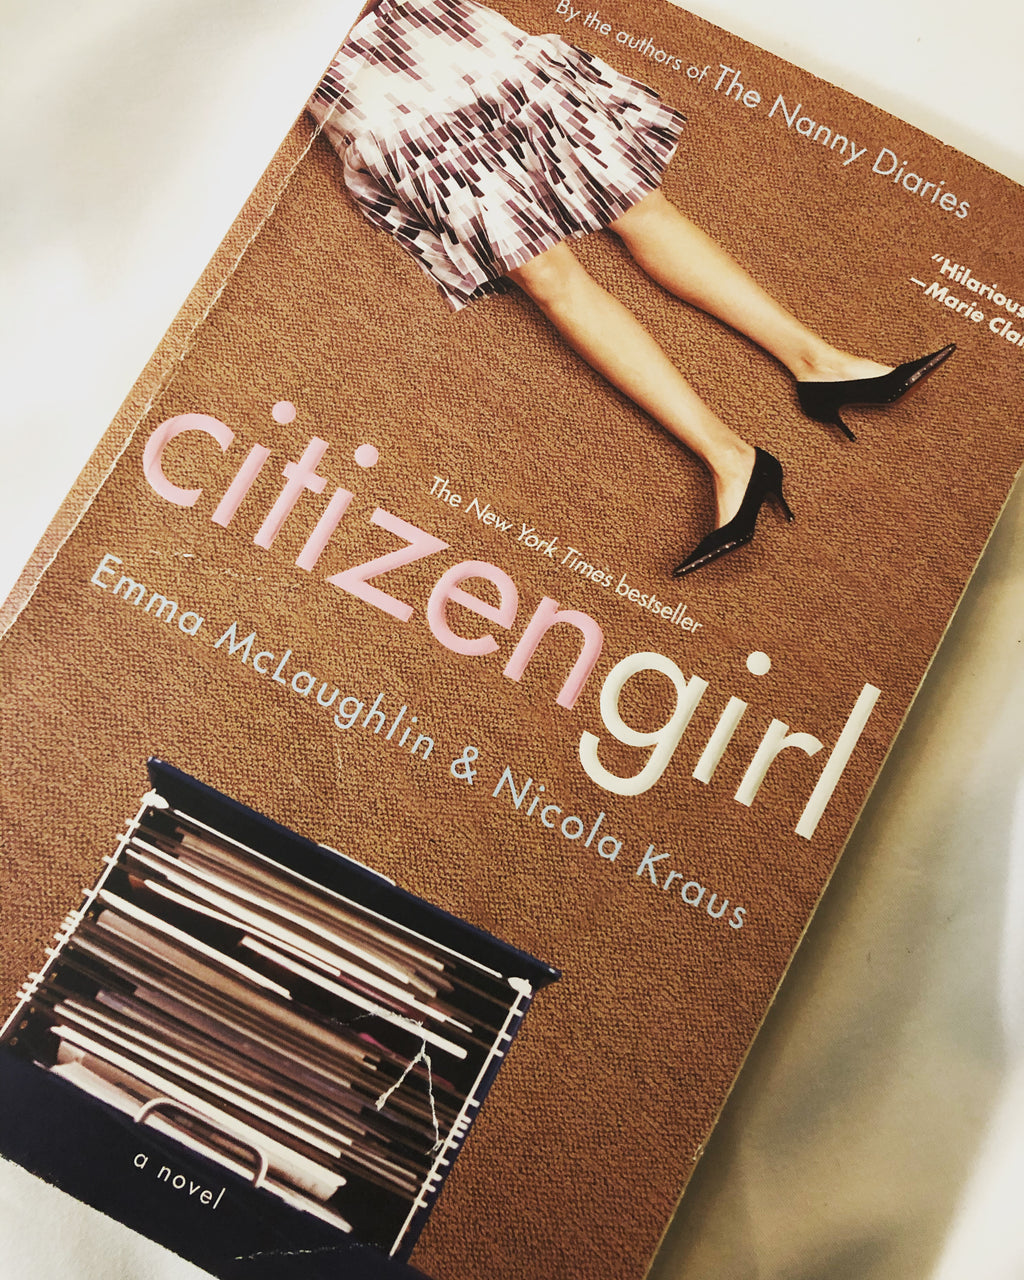 Citizen Girl- By Emma McLaughlin & Nicola Kraus